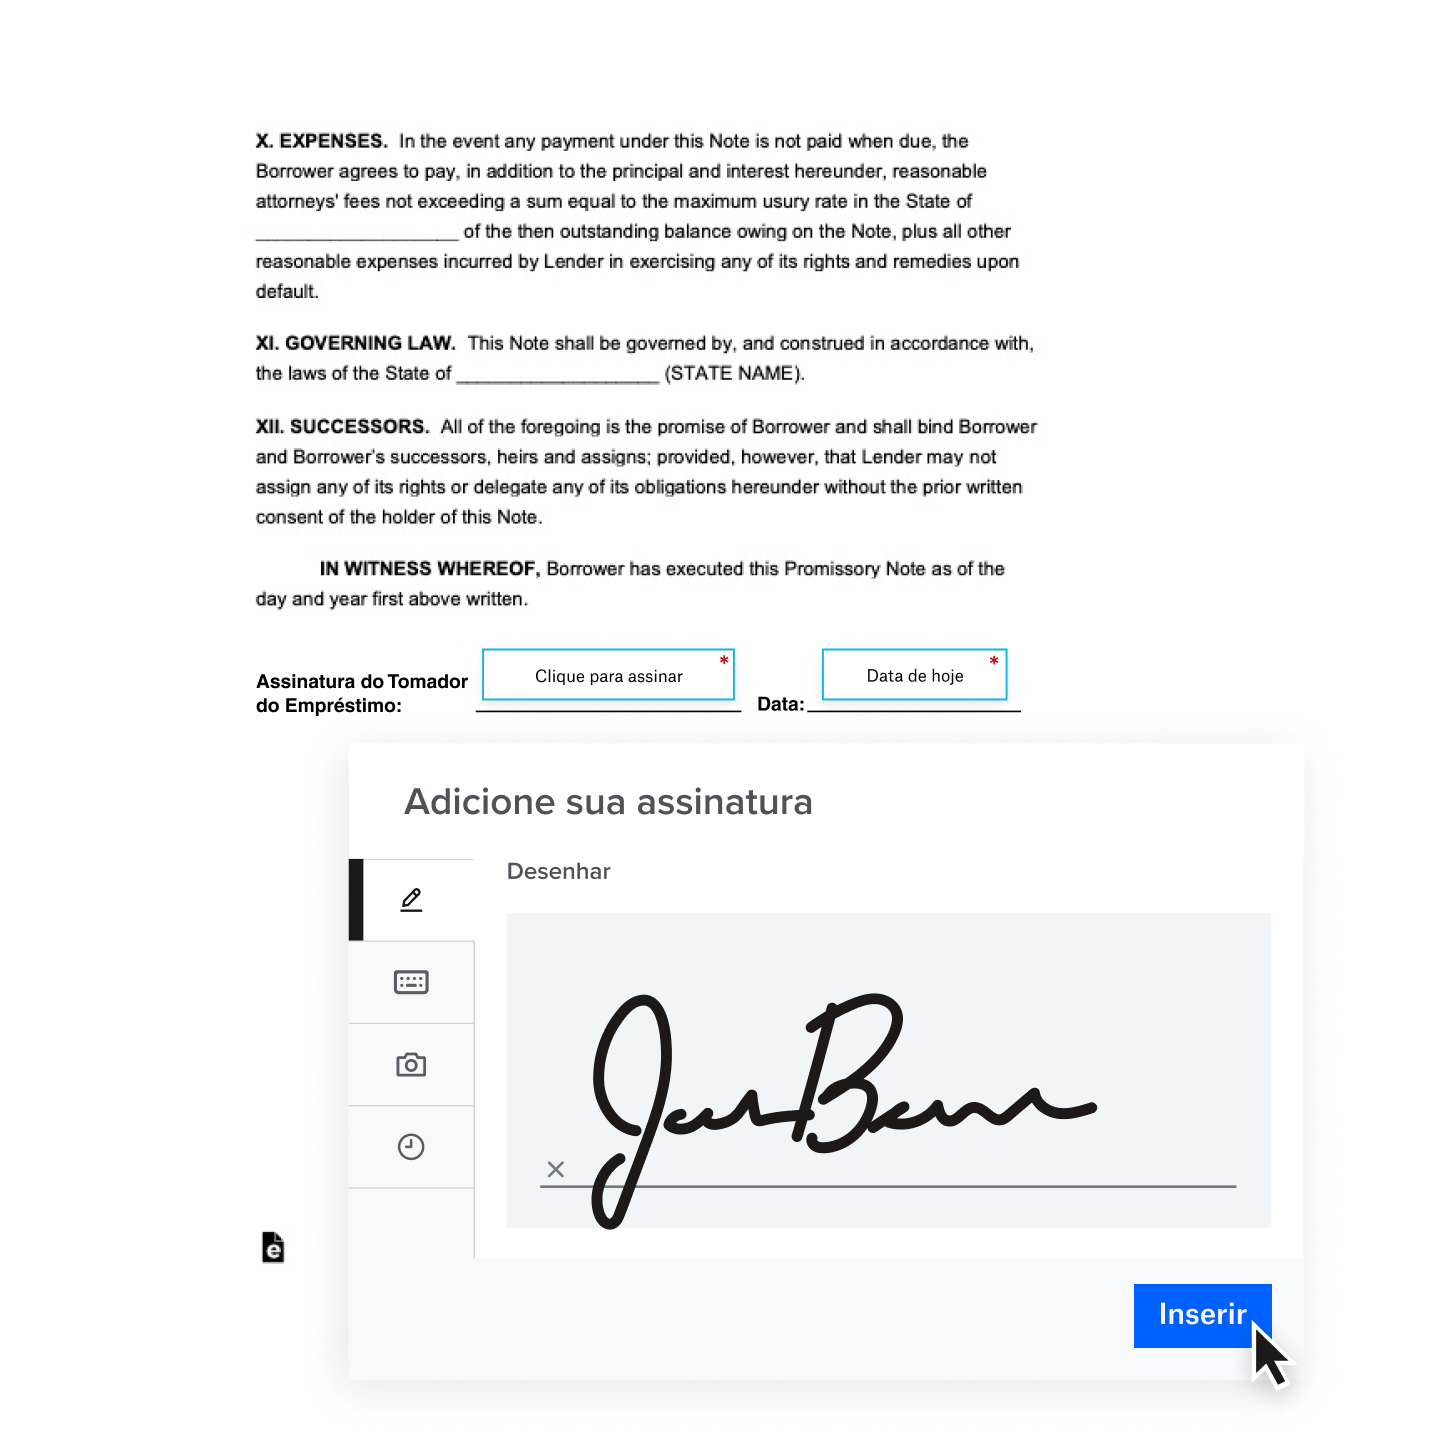 Uma assinatura digital manuscrita sendo adicionada a um contrato